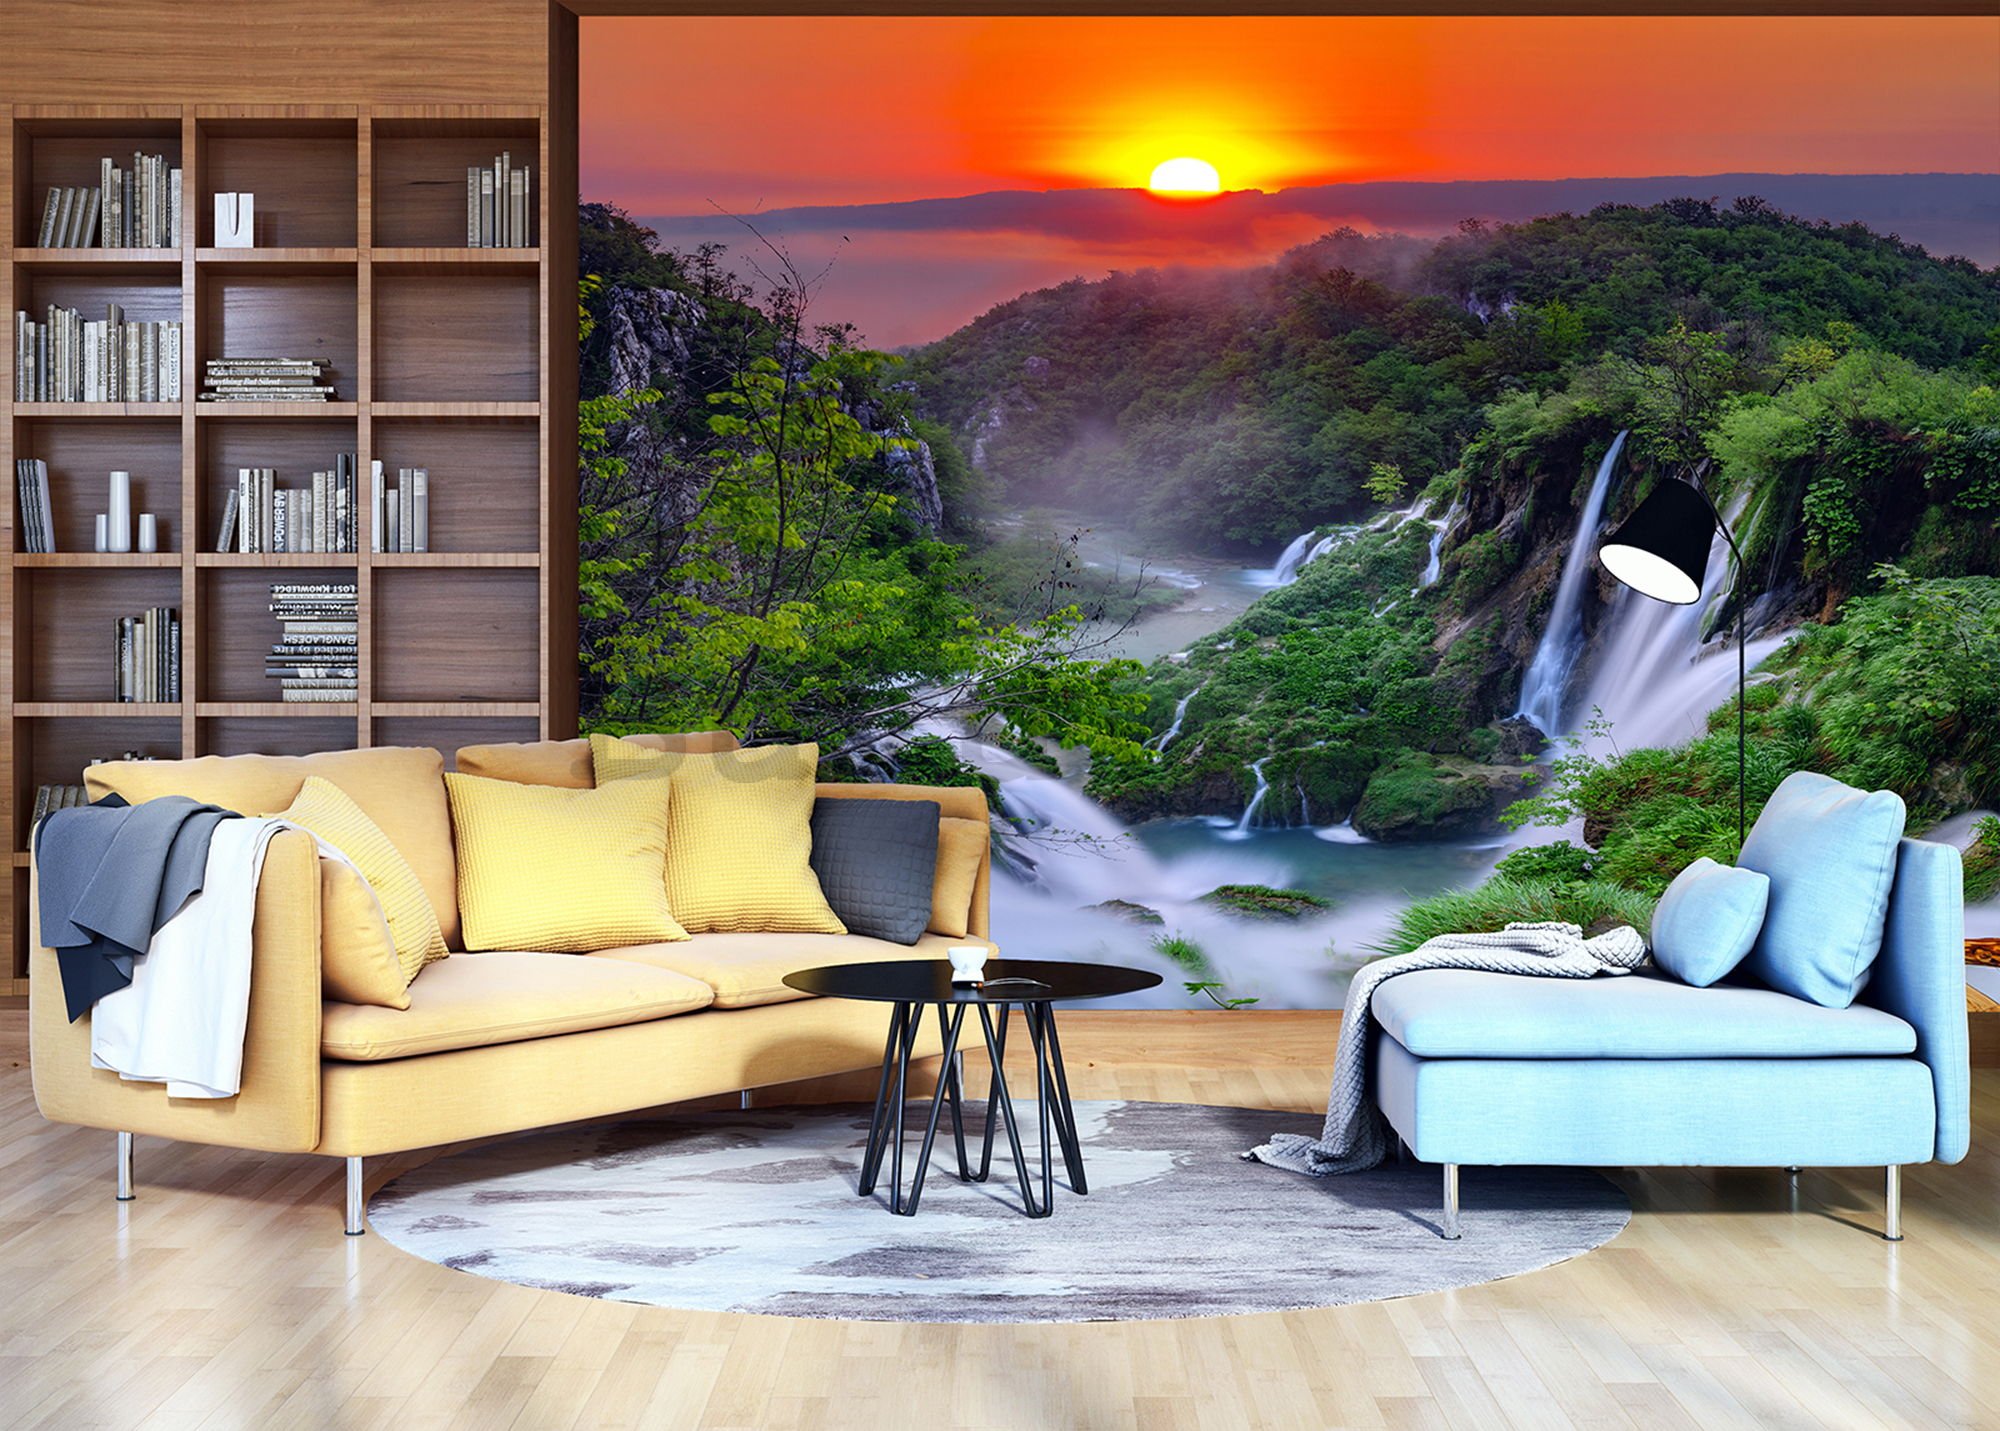 Vlies foto tapeta: Plitvička jezera (izlazak sunca) - 184x254 cm